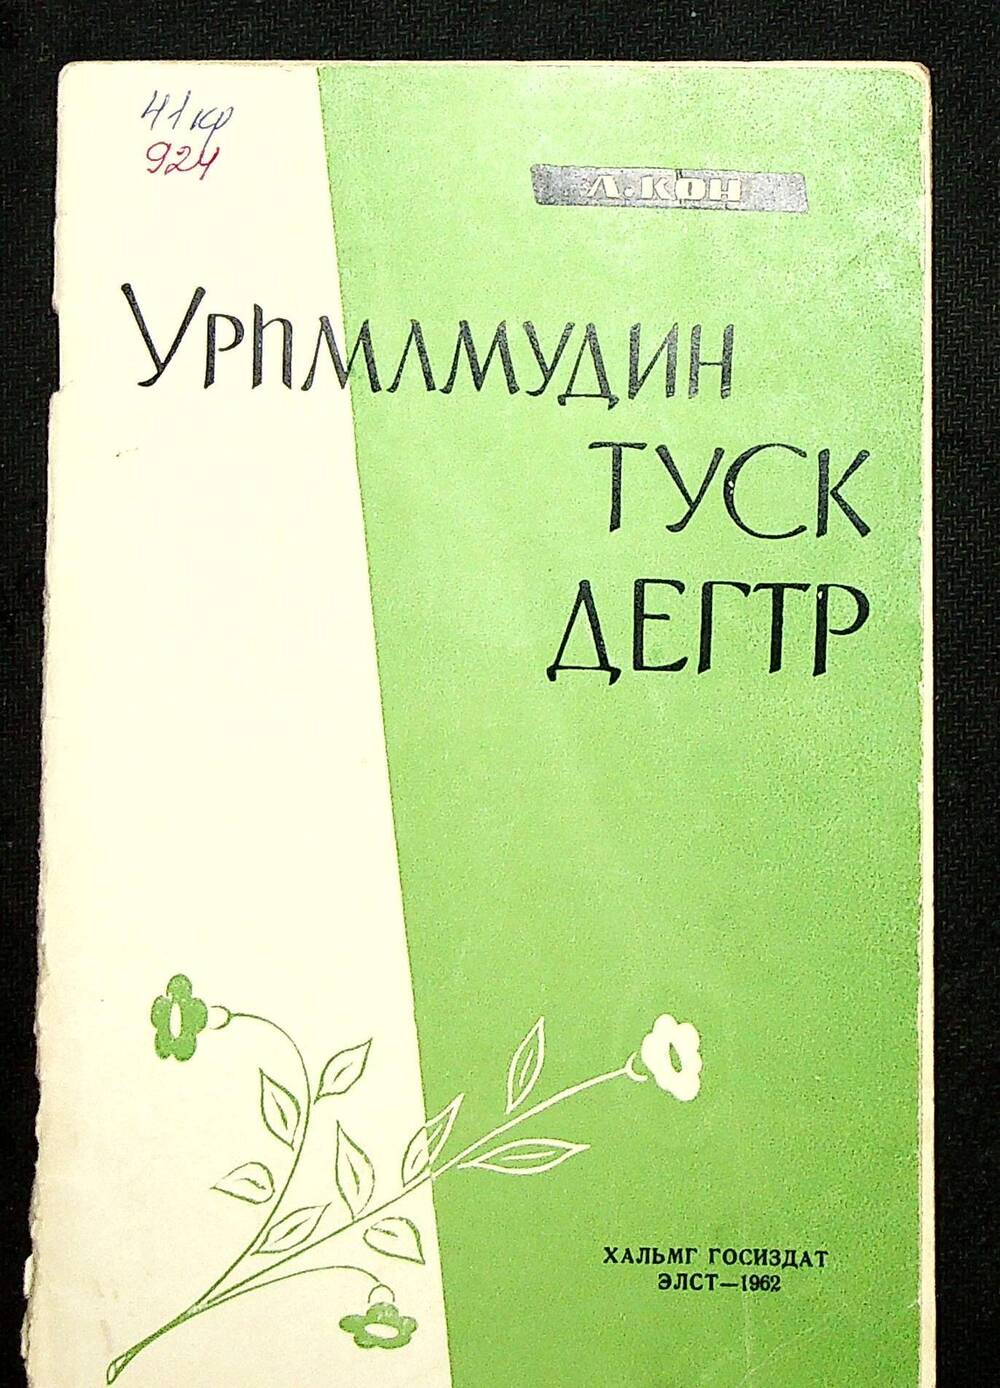 Книга. Кон Л. Урһлмудин туск дегтр / Книга о растениях. (На калмыцком языке) Элст: Хальмг госиздат, 1962 г.